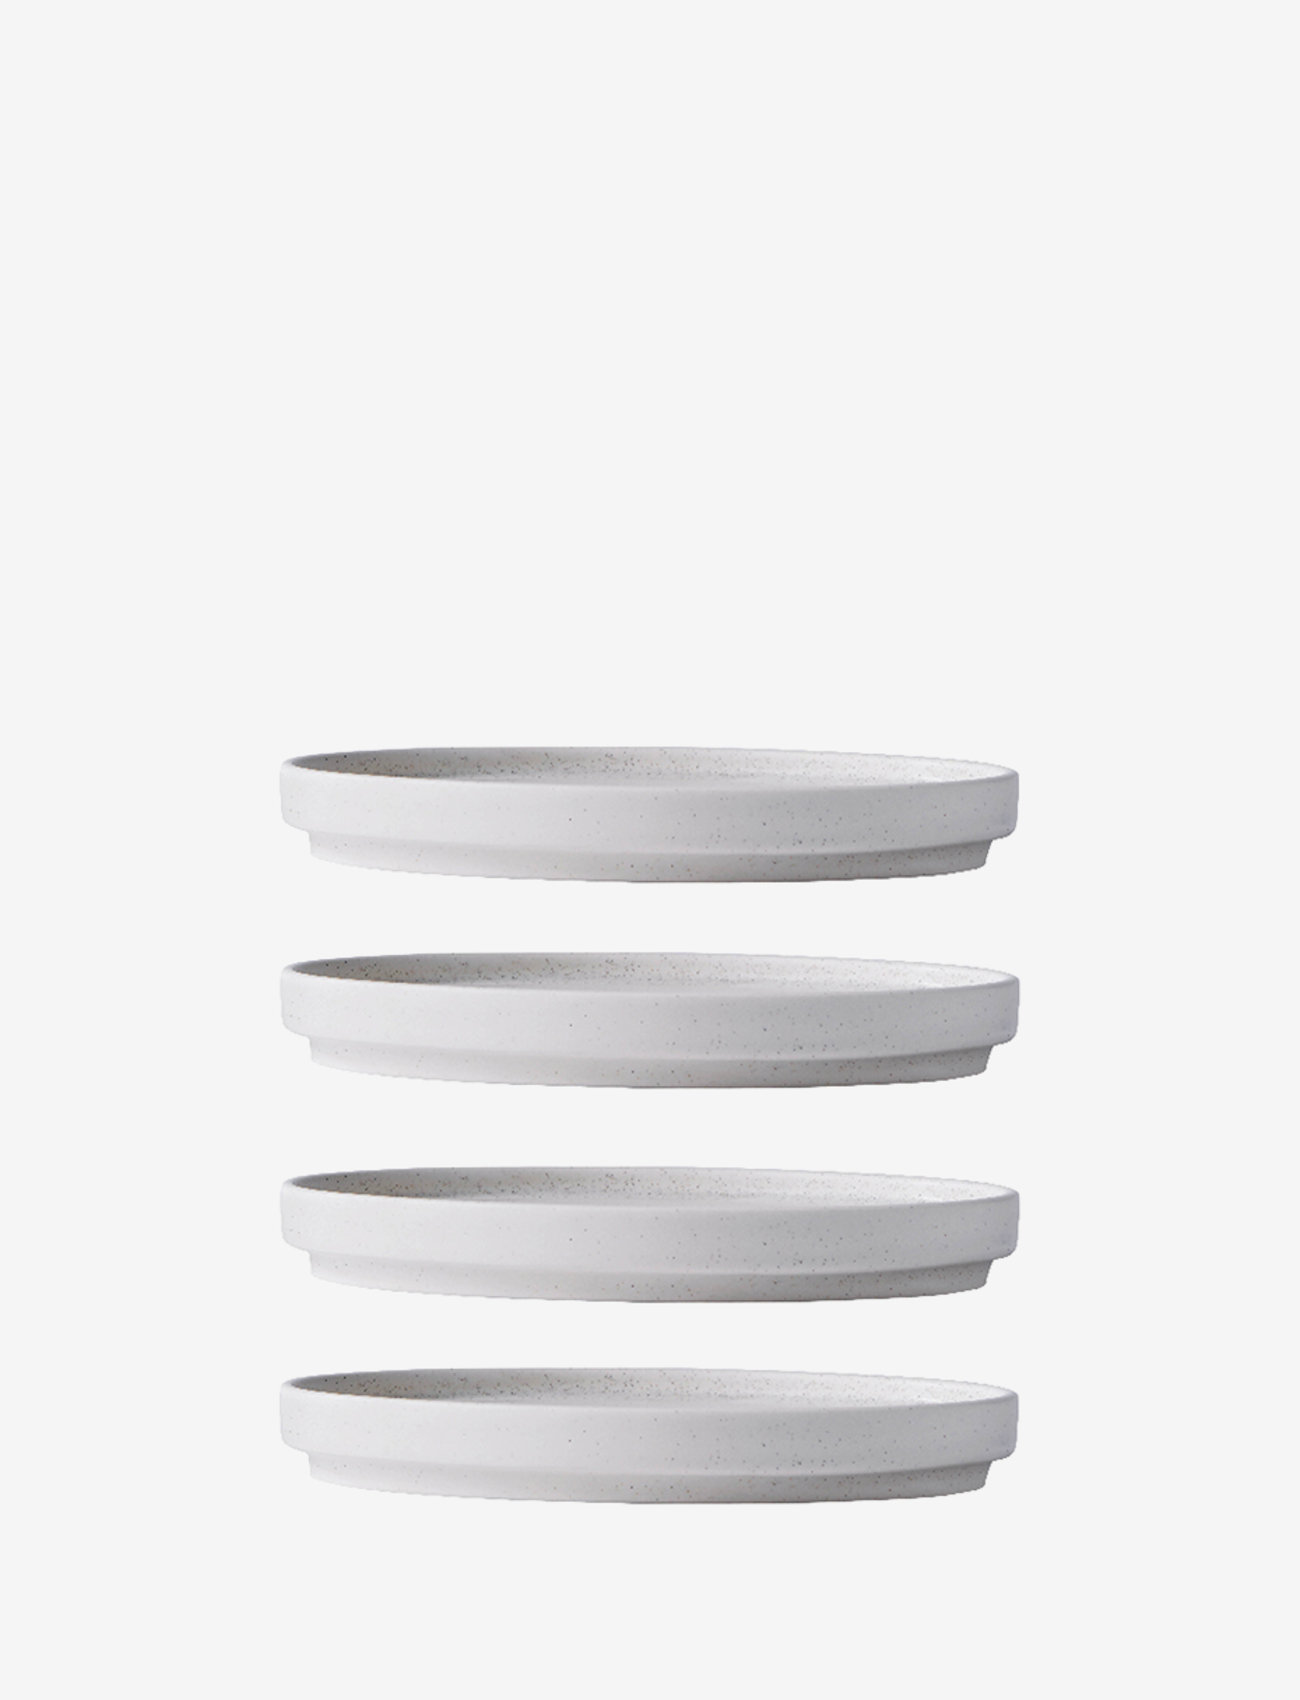 Kristina Dam Studio - Setomono Dinner Plate - Small / Set of 4 - ceramics - 0